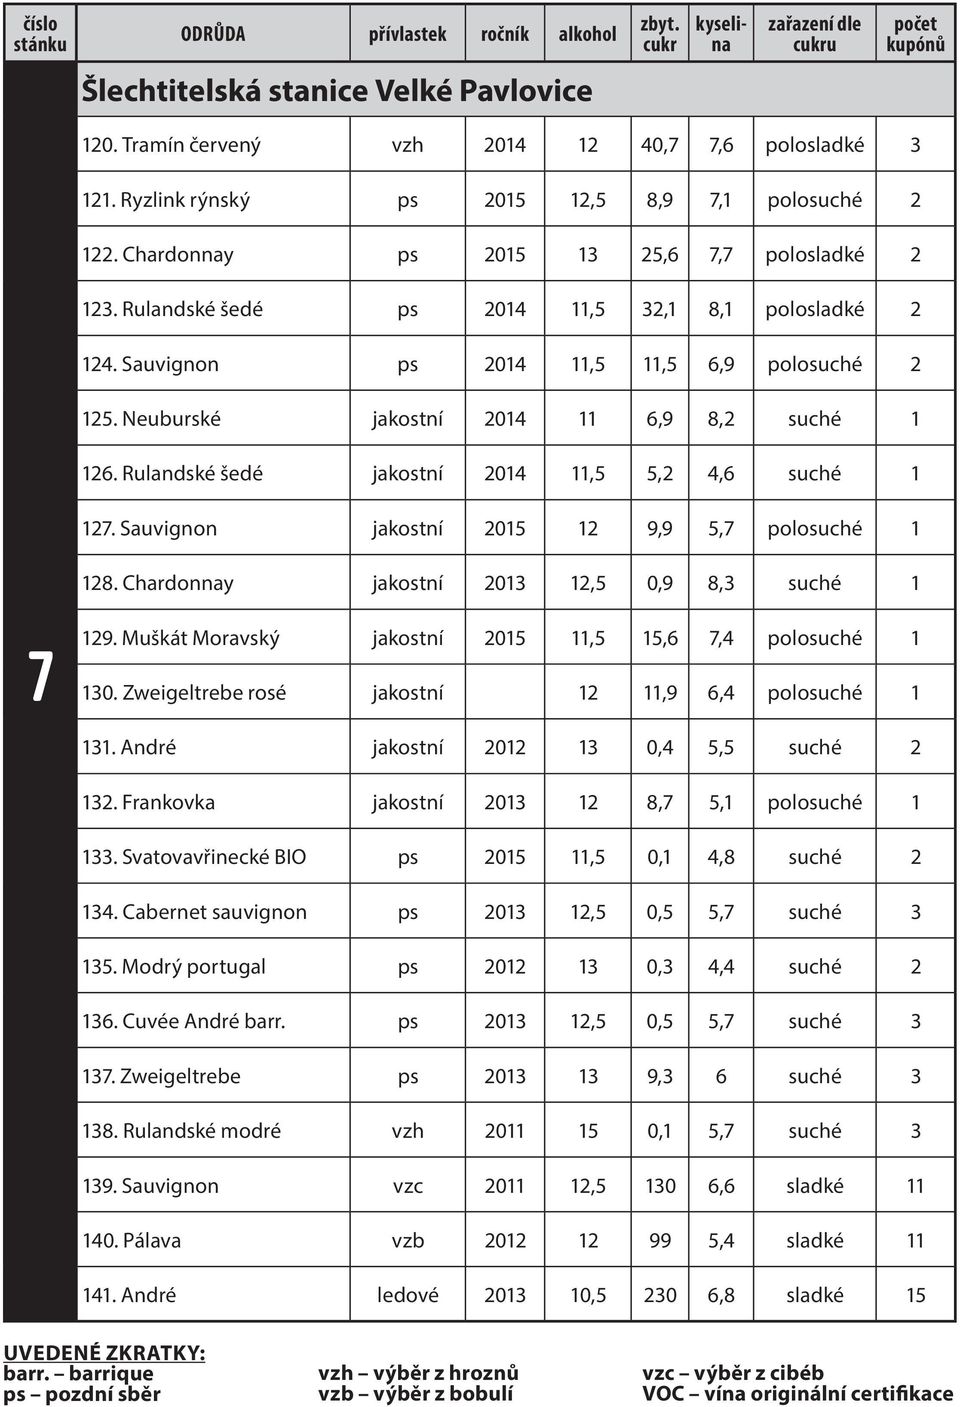 Rulandské šedé jakostní 2014 11,5 5,2 4,6 suché 1 127. Sauvignon jakostní 2015 12 9,9 5,7 polosuché 1 128. Chardonnay jakostní 2013 12,5 0,9 8,3 suché 1 7 129.